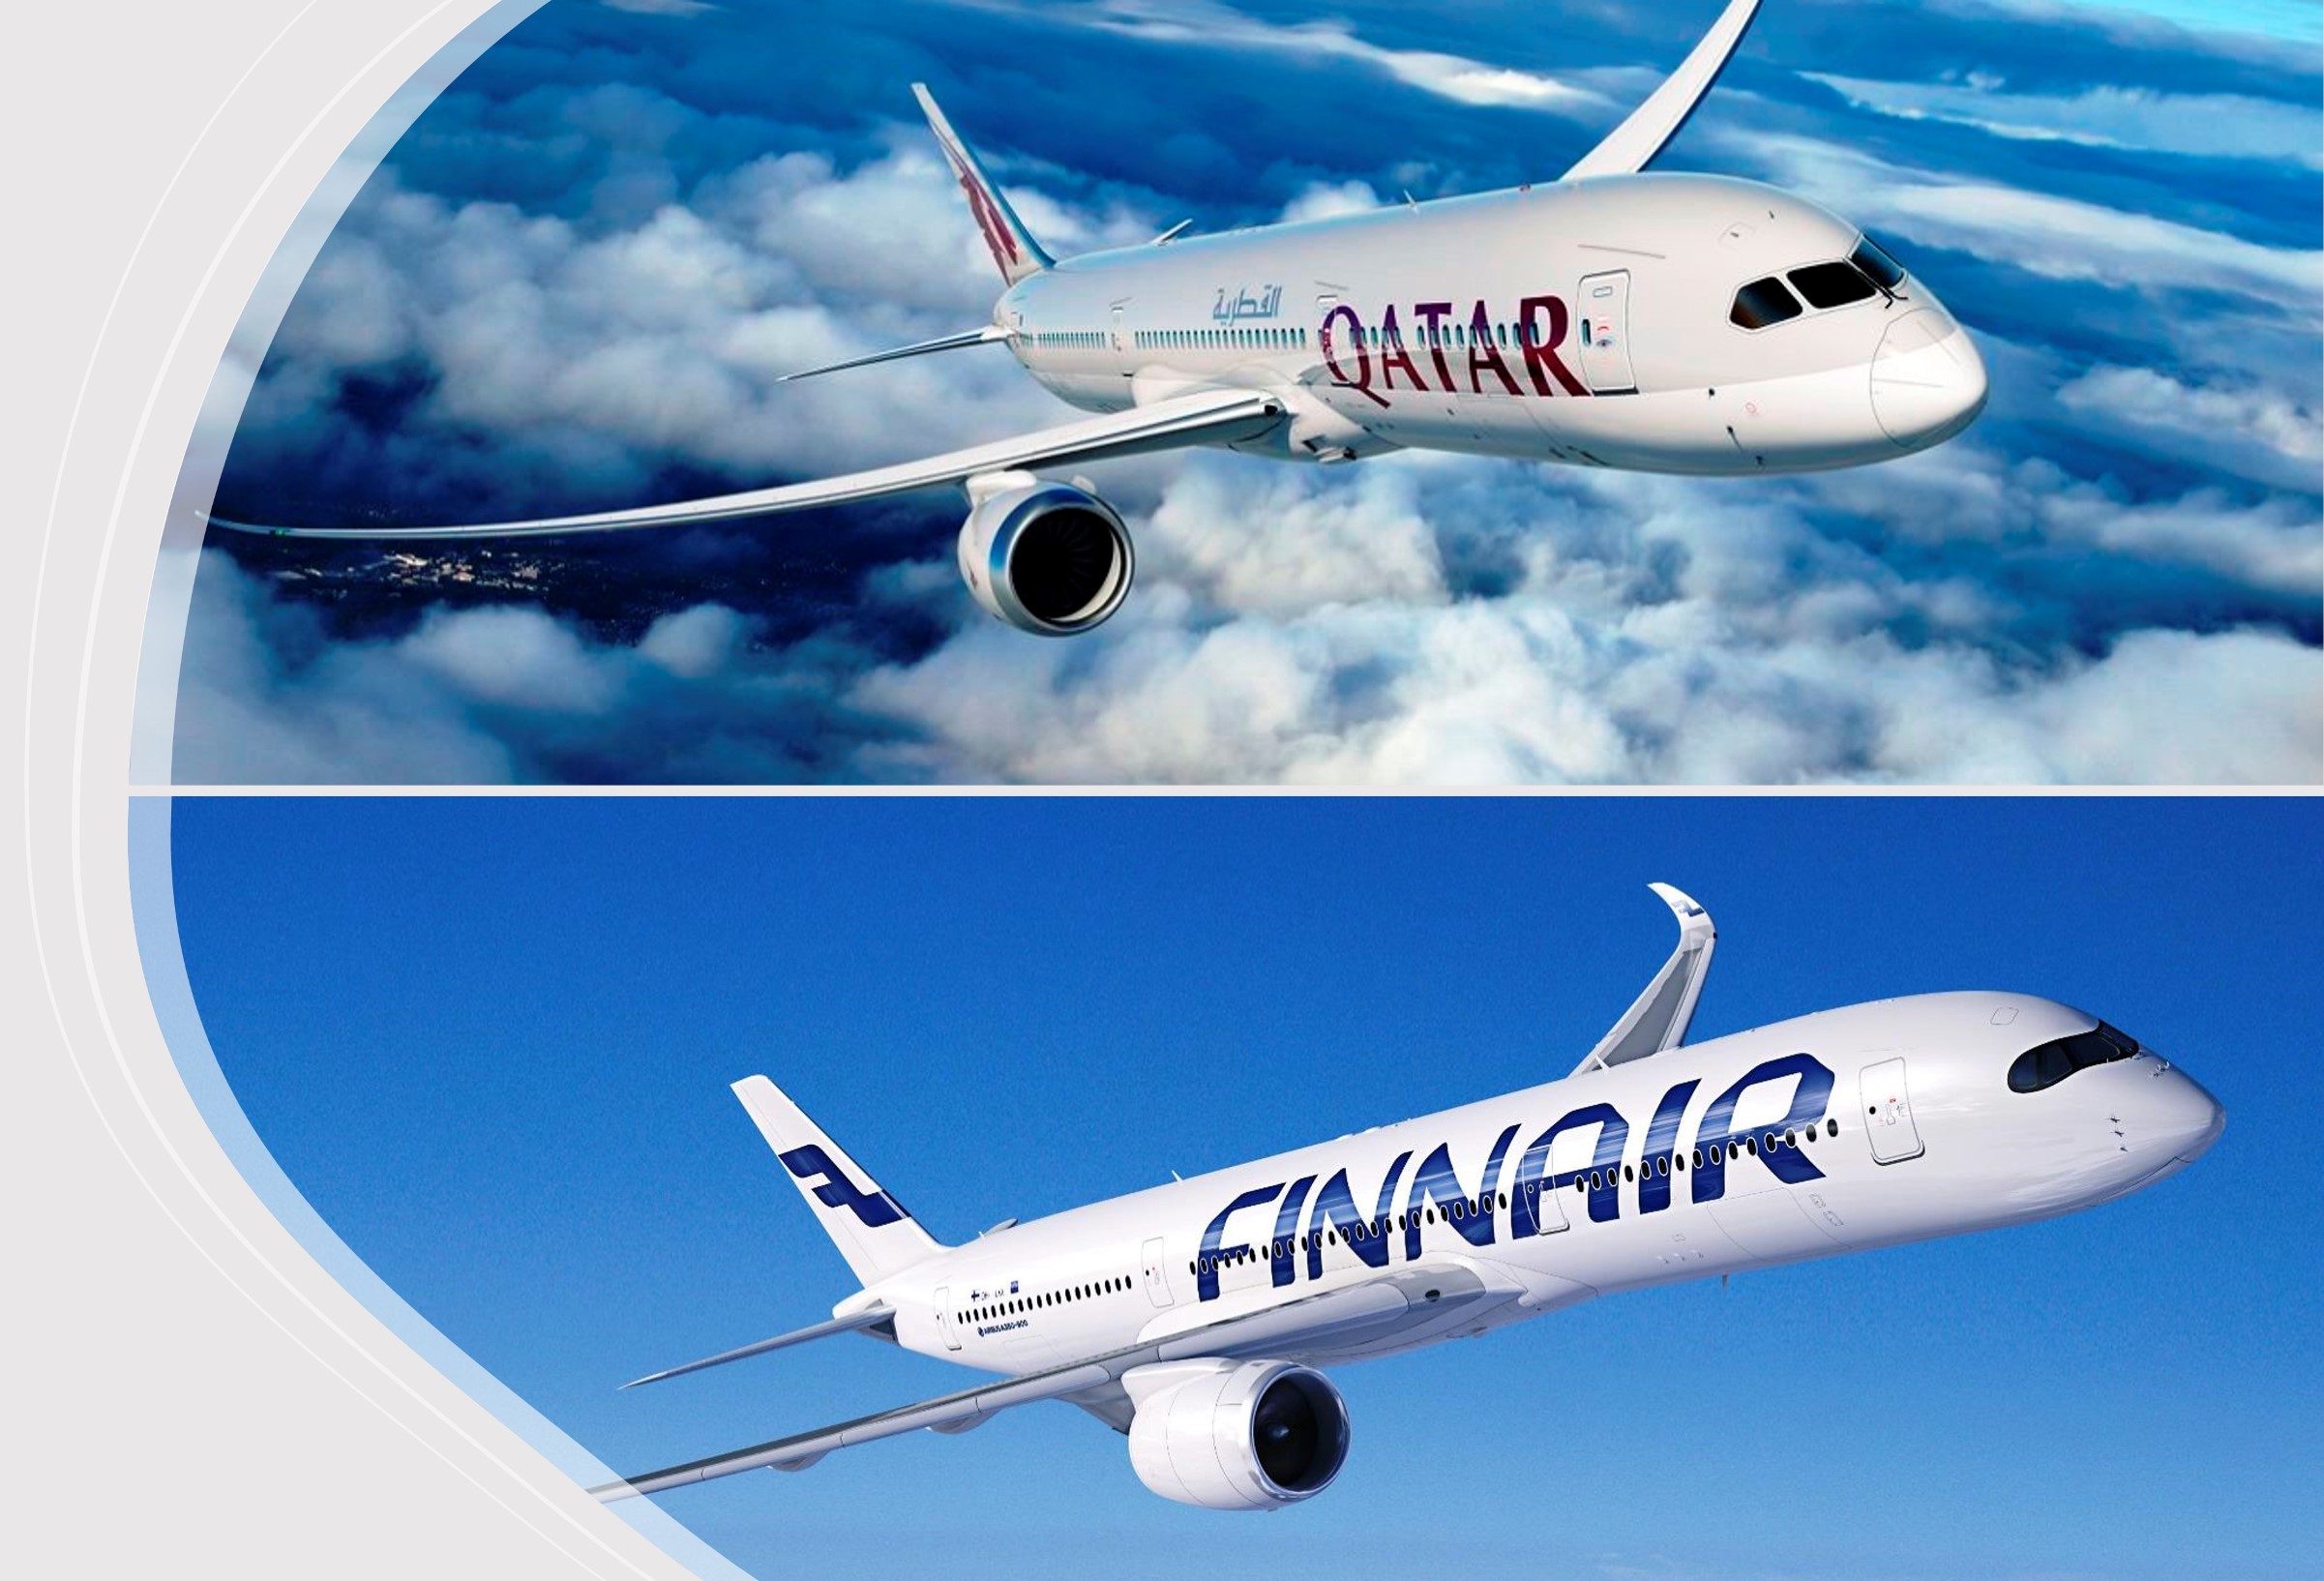 Qatar Airways - Finnair